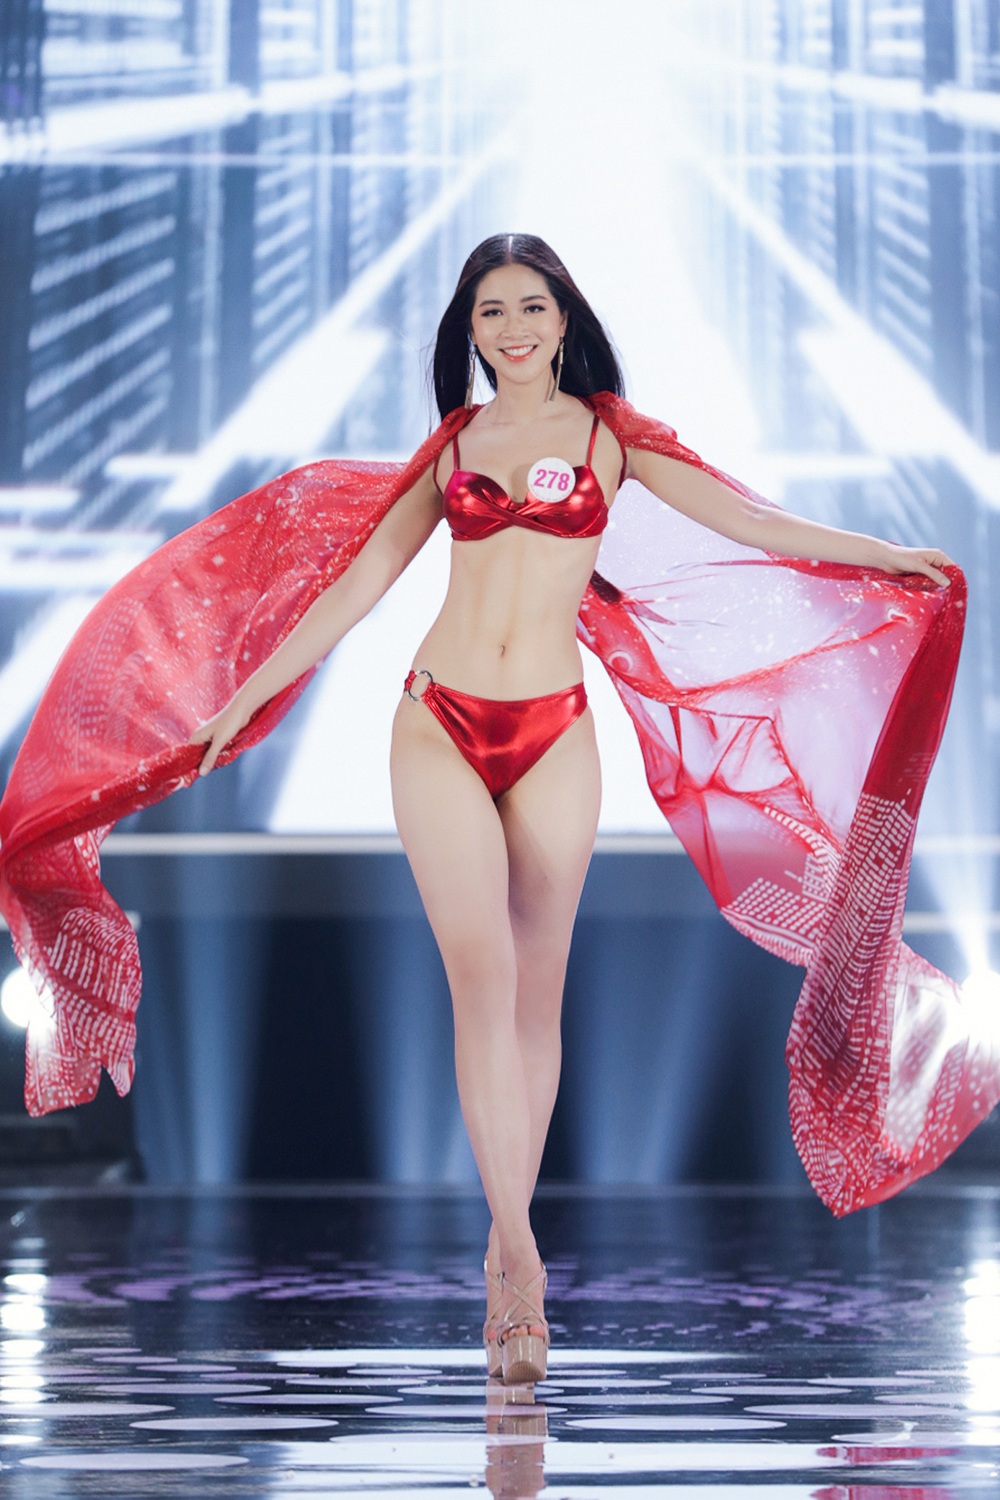 Phần thi Bikini đốt mắt tại đêm Chung kết Hoa hậu Việt Nam 2020 - Ảnh 14.